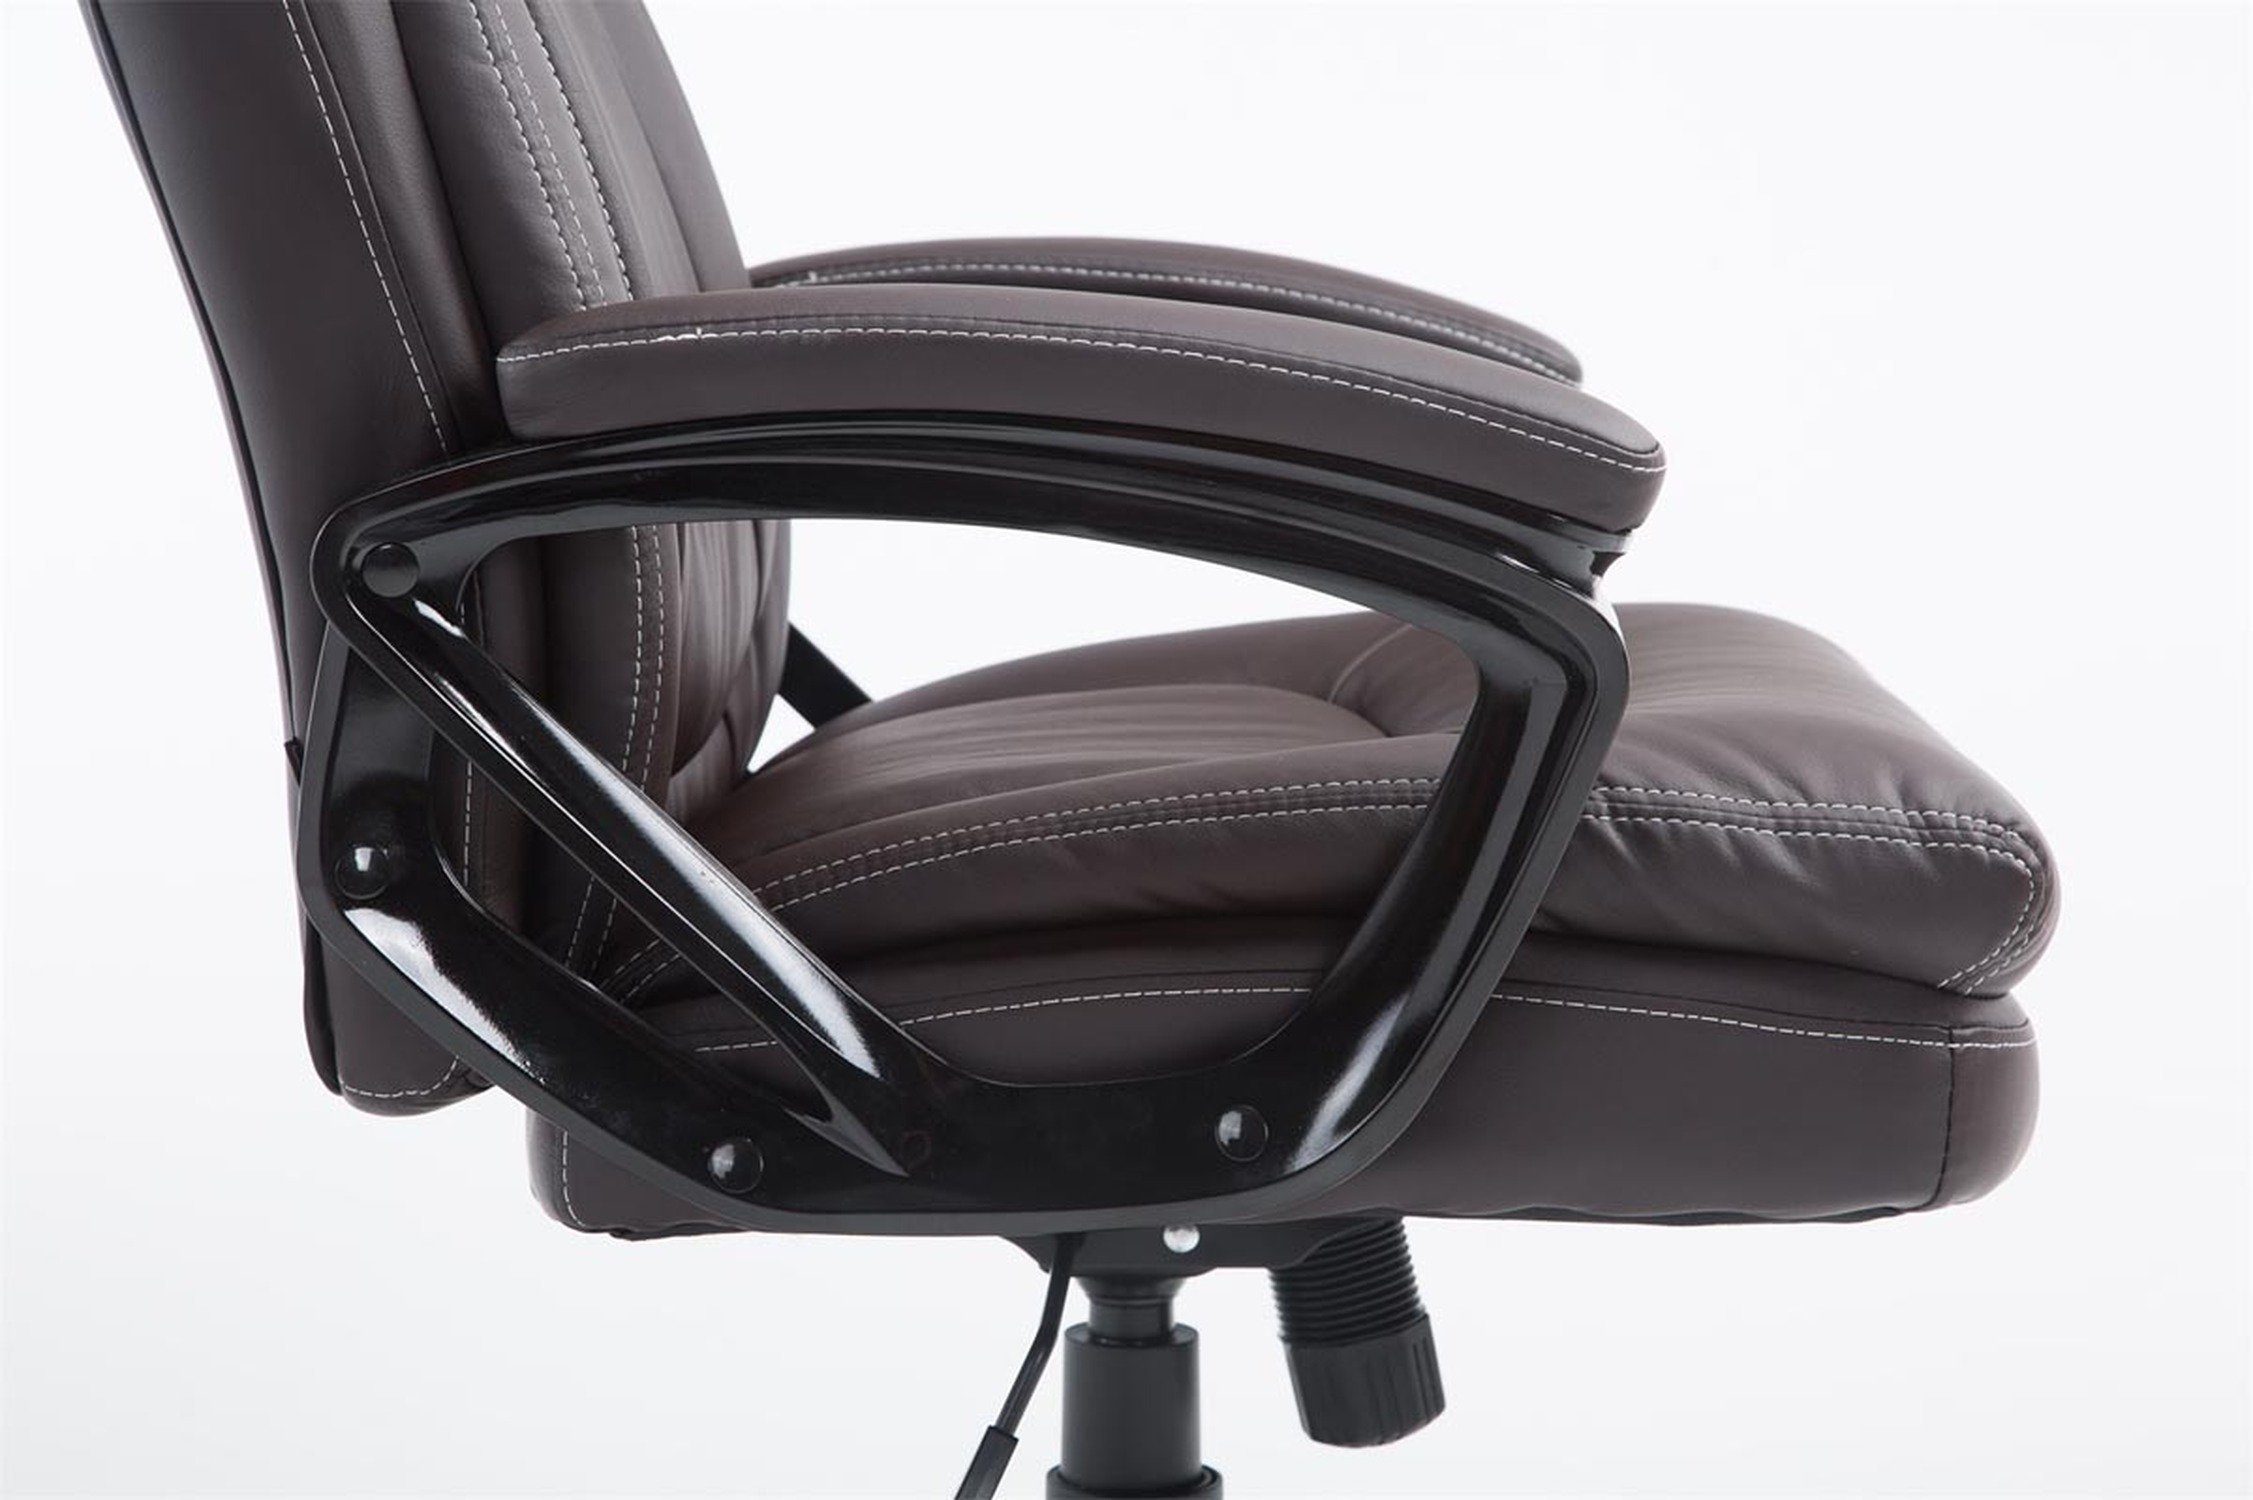 TPFLiving Bürostuhl Ploy Sitz: (Schreibtischstuhl, braun drehbar Rückenlehne Drehstuhl, Kunstleder und mit höhenverstellbar Bürostuhl XXL), Chefsessel, 360° schwarz Gestell: Kunstleder - - bequemer